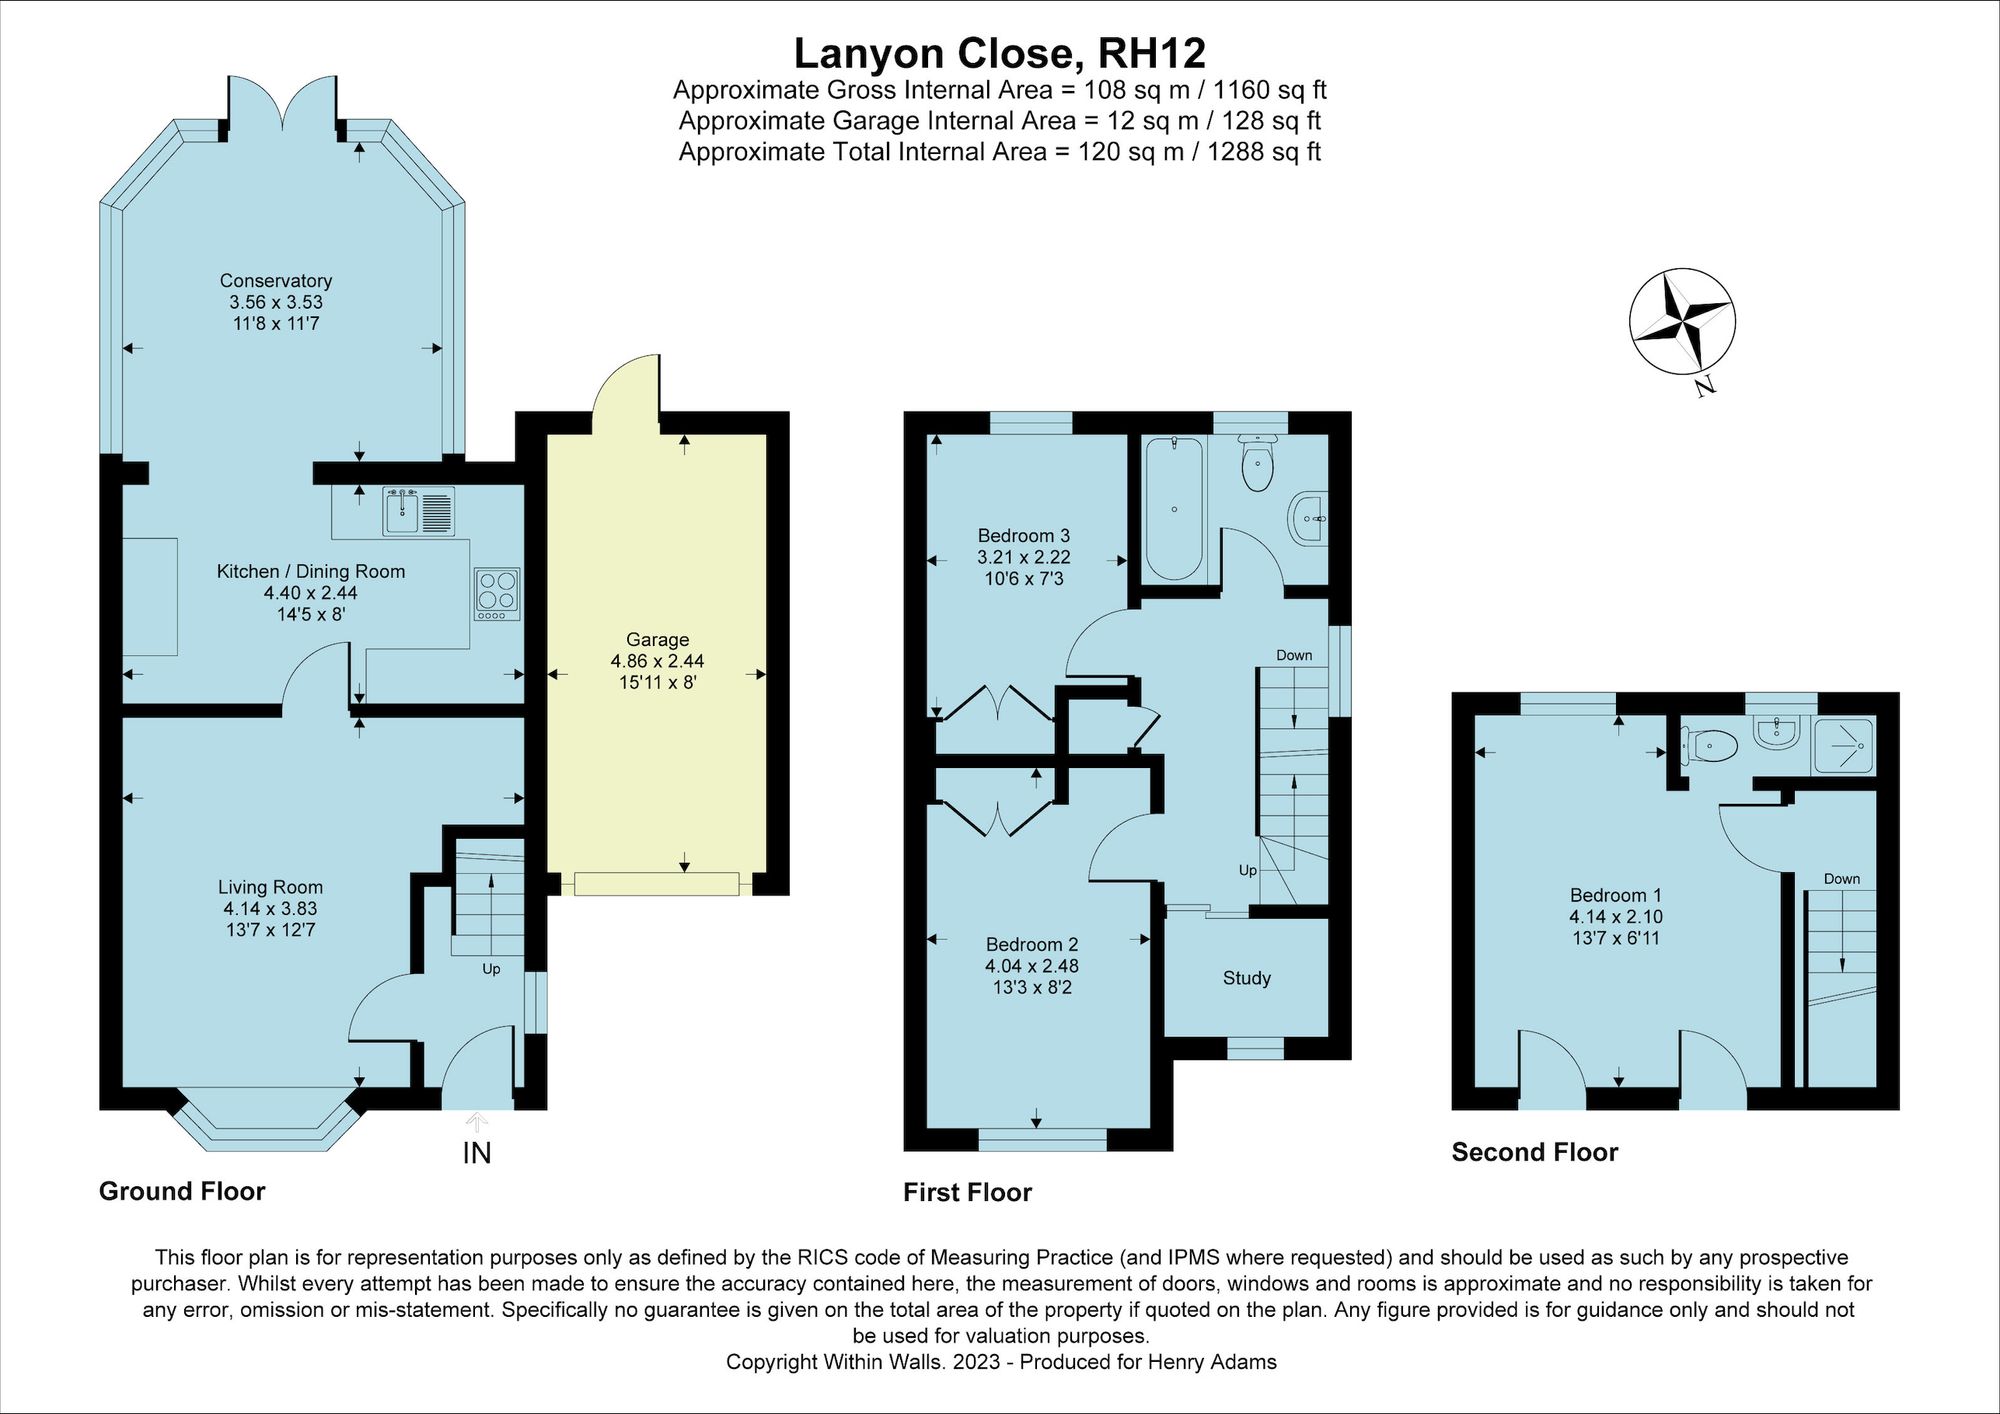 Lanyon Close, Horsham, RH12 floorplans